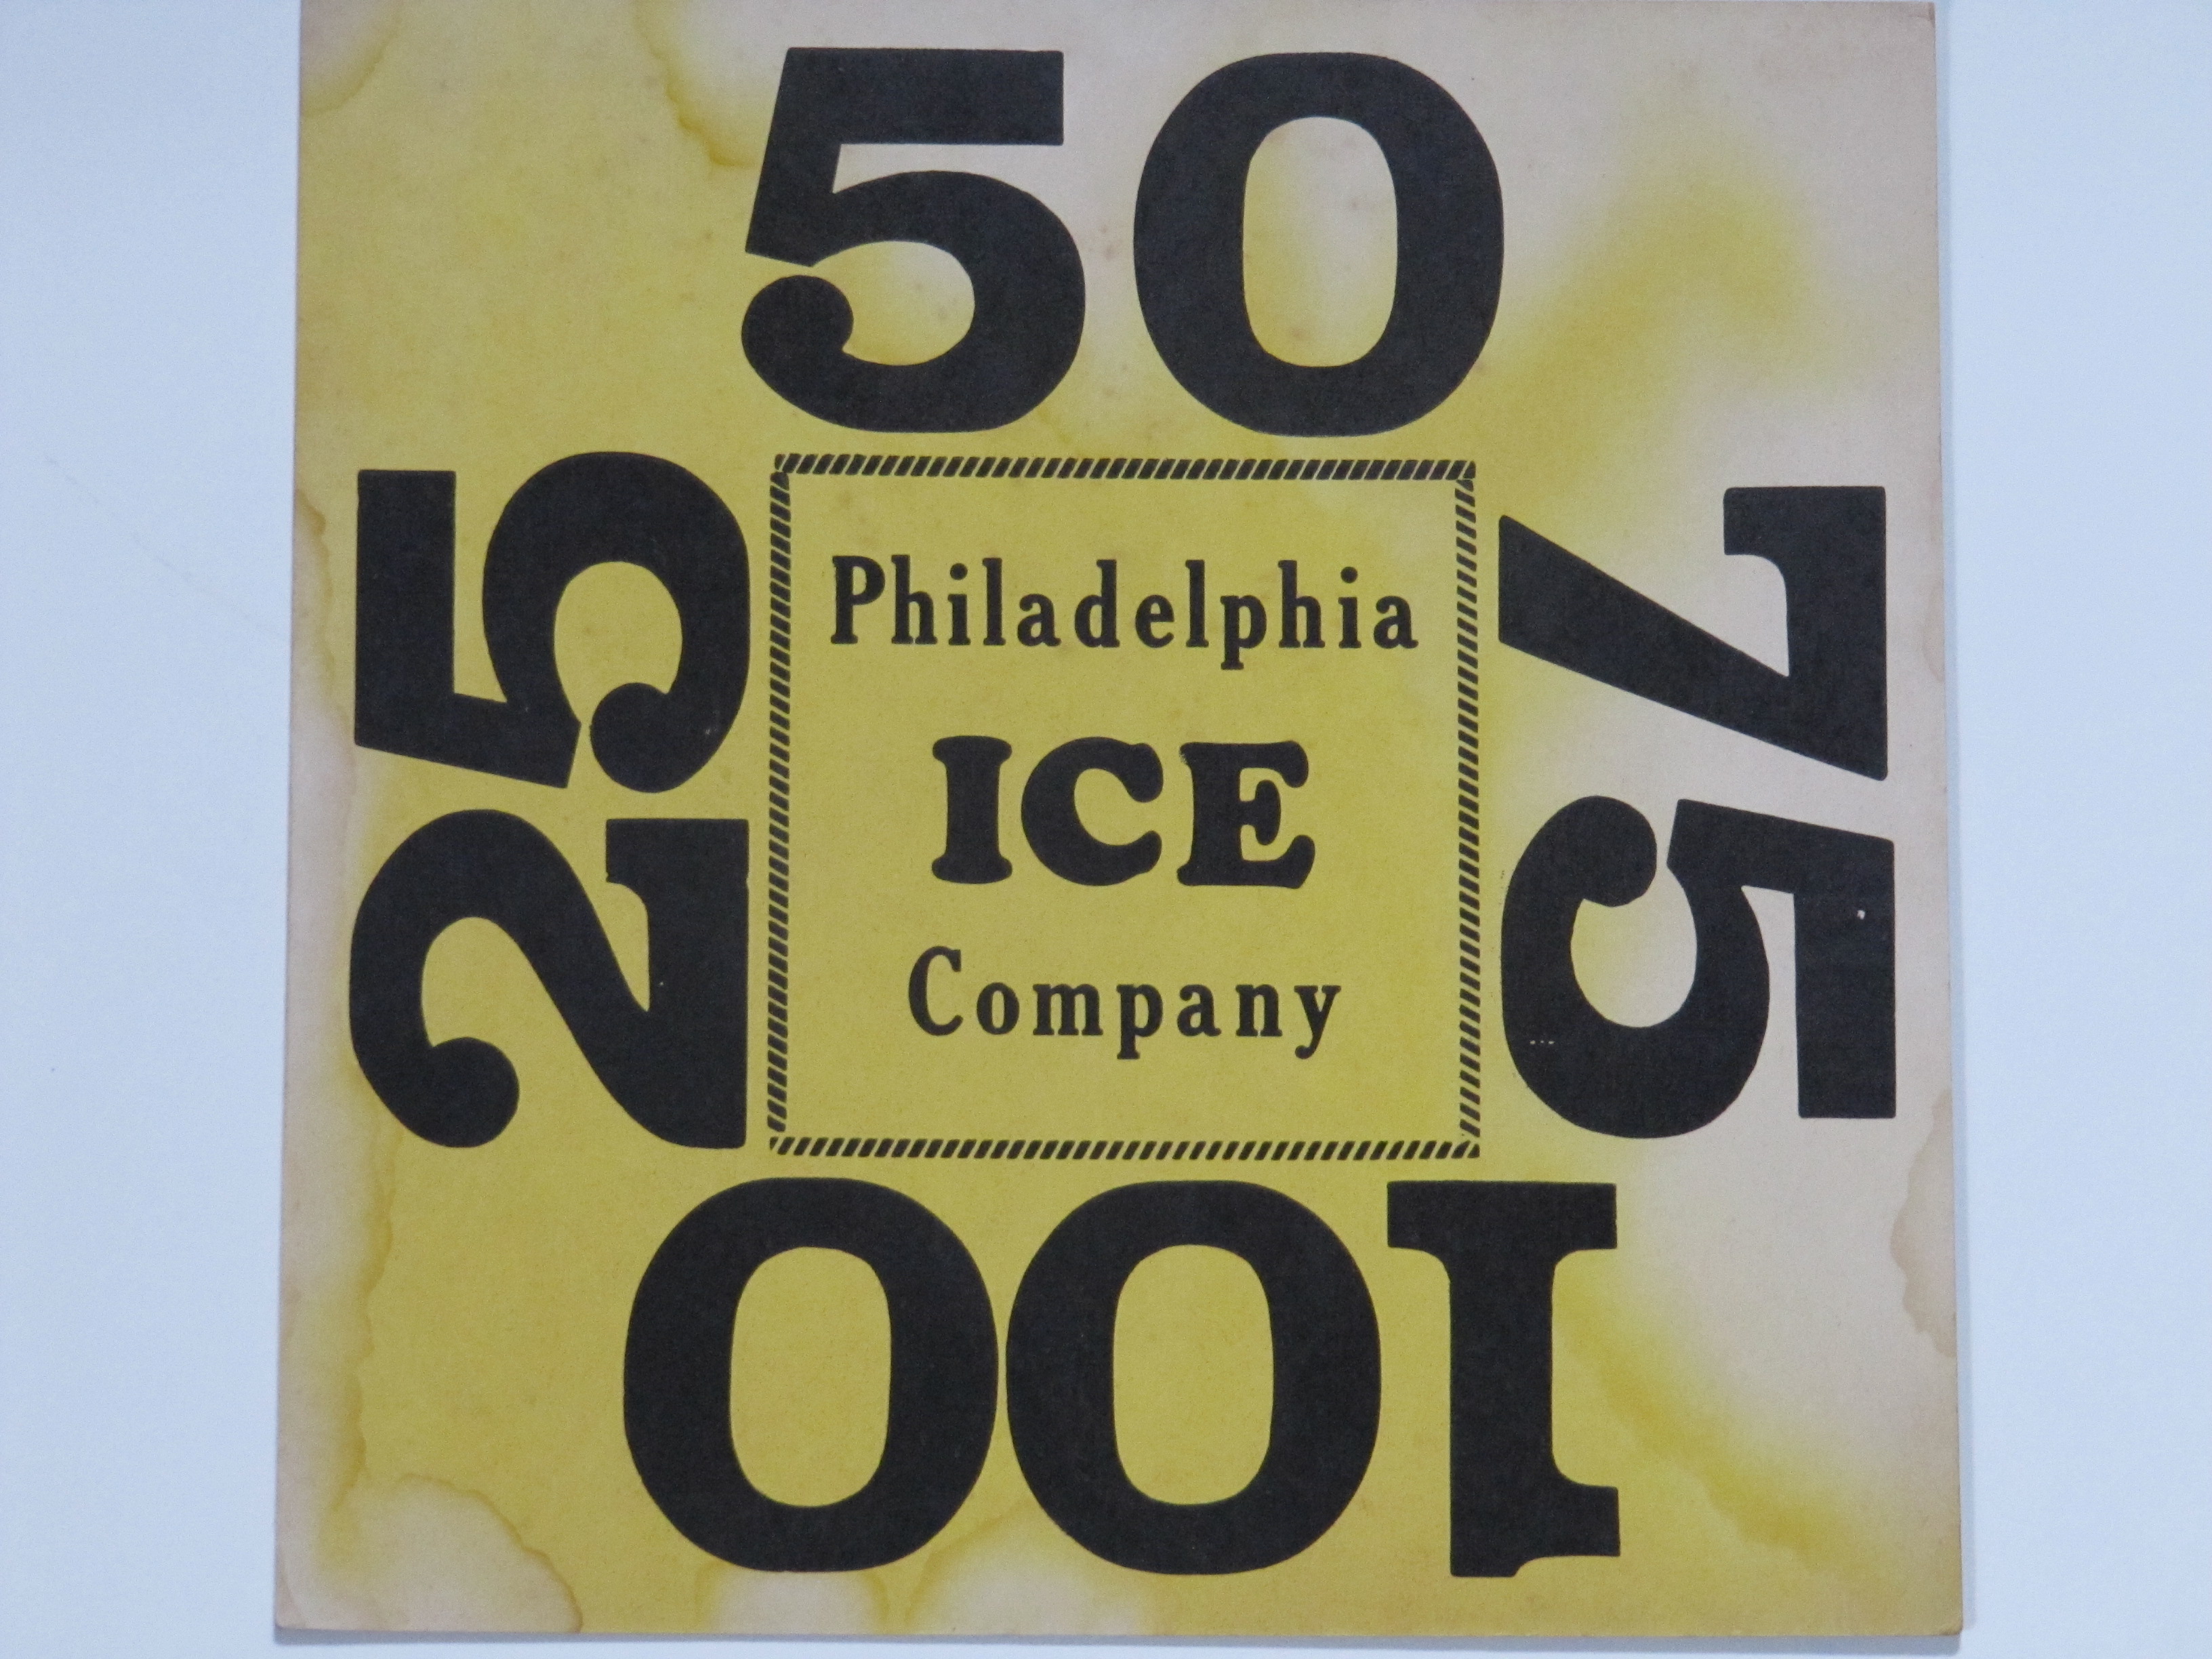 Philadelphia Ice Co.